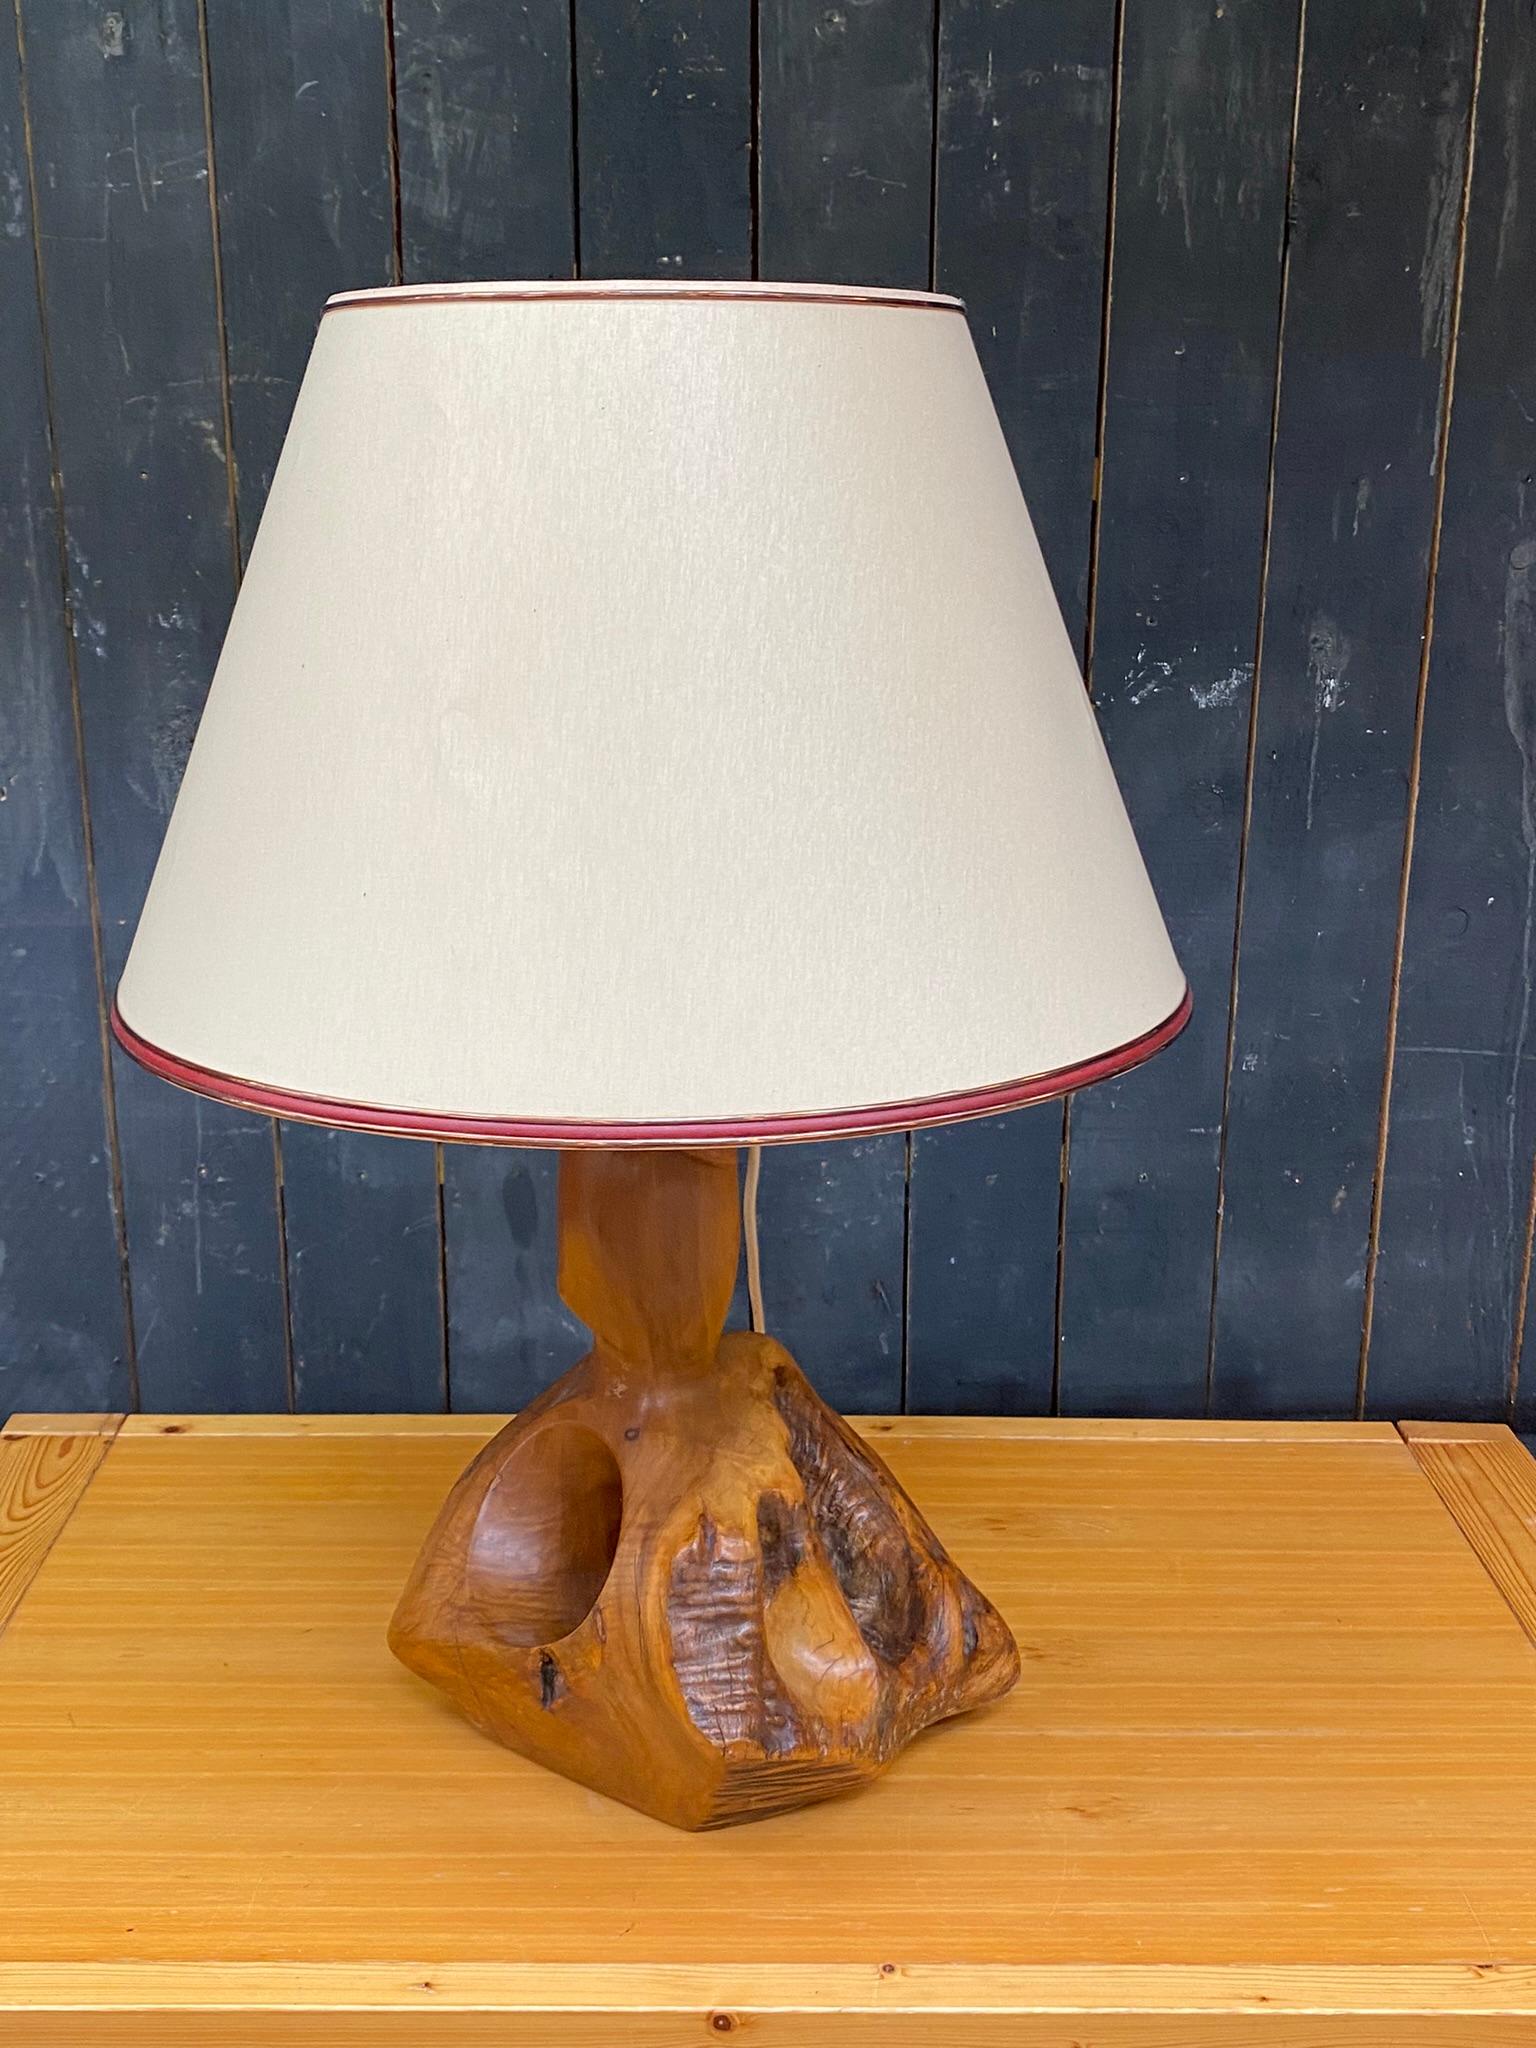 Lampe organique en Wood Wood, sculpture directe, circa 1970
hauteur lampe seule : 52 cm (20,47